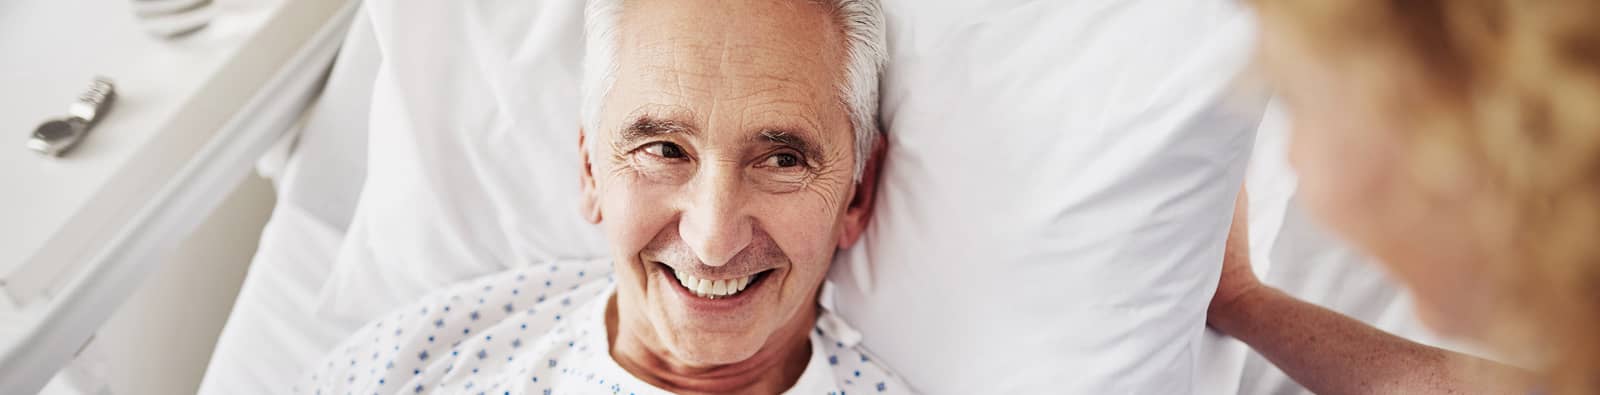 a patient smiling